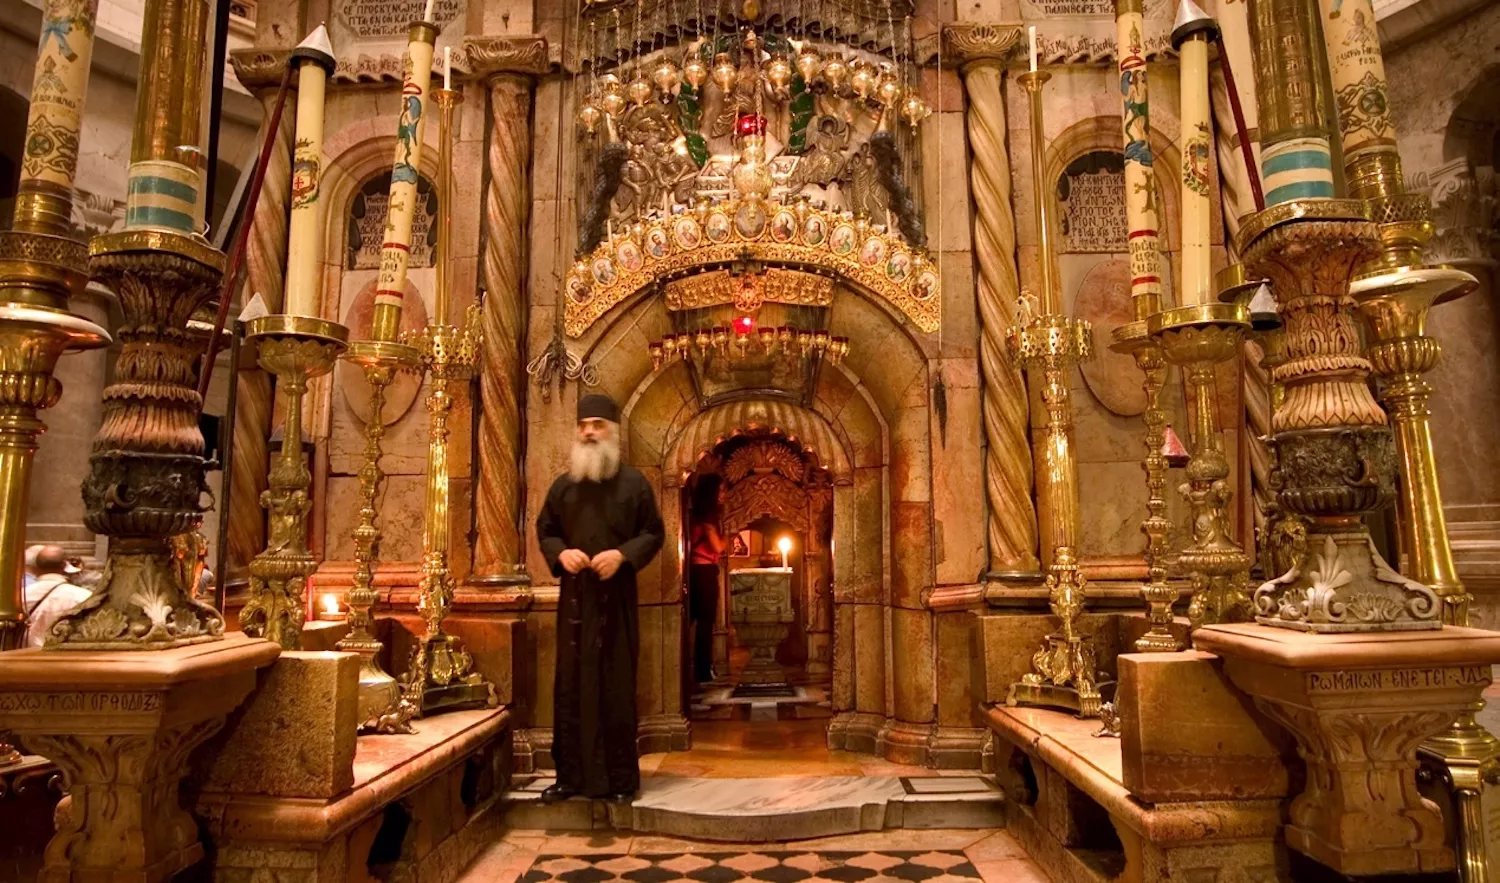 Sis confessions cristianes es fan càrrec del temple del Sant Sepulcre. La tomba està protegida per grecs ortodoxos